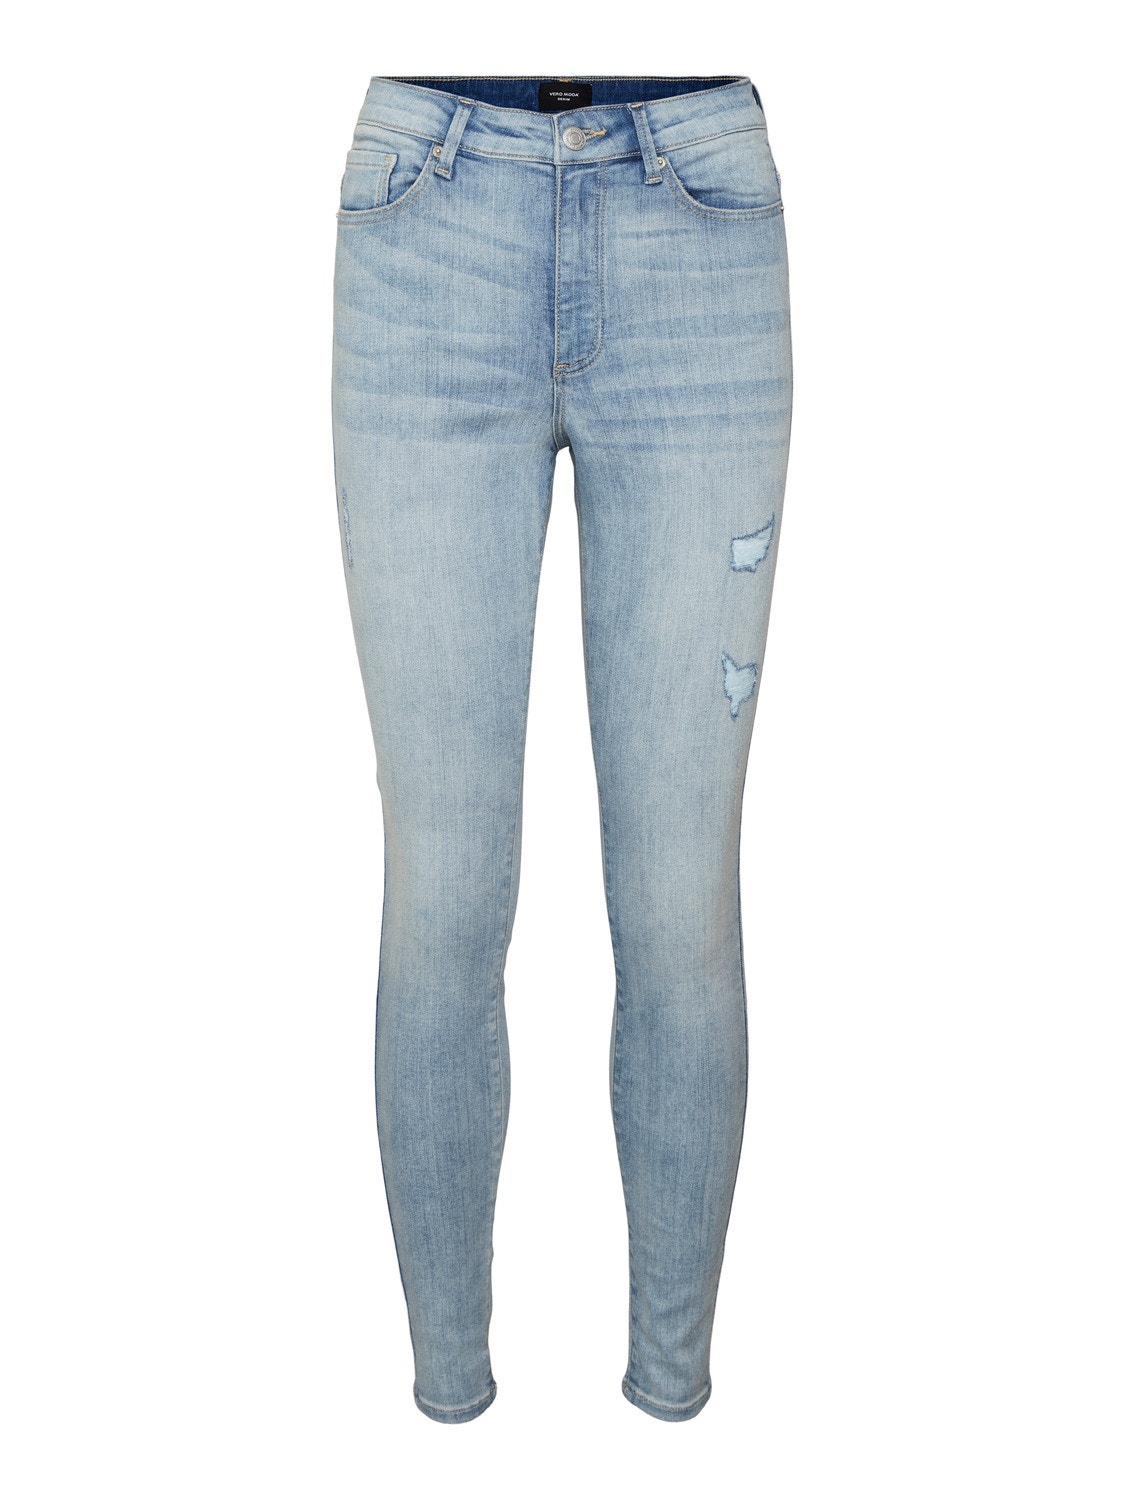 Vero Moda VMSOPHIA Taille haute Skinny Fit Jeans -Light Blue Denim - 10225526